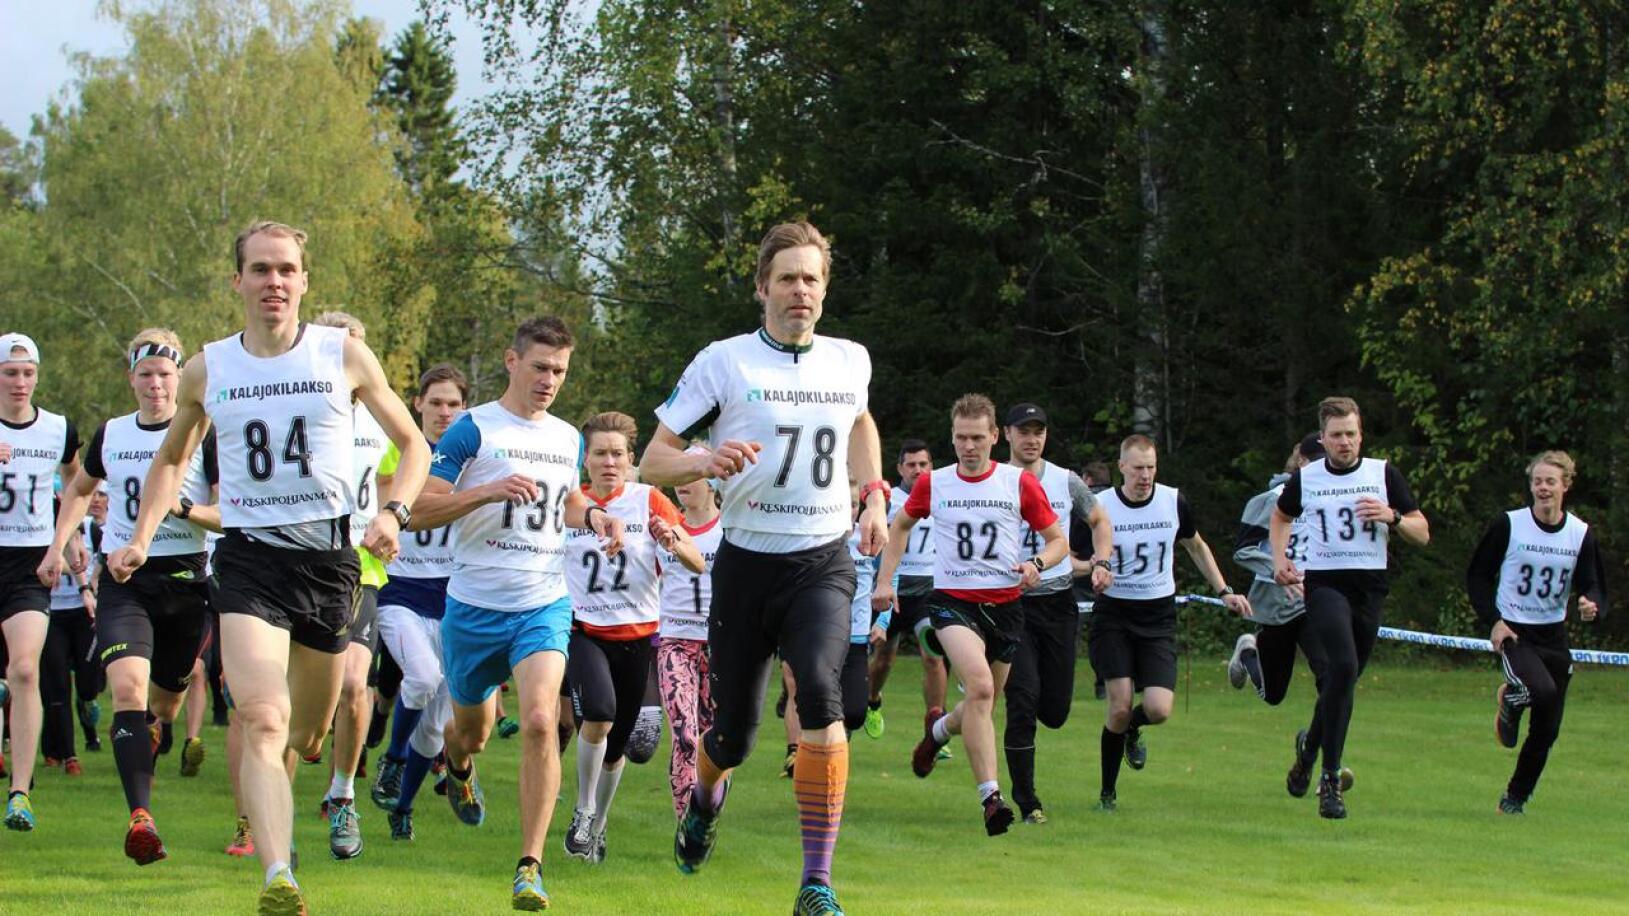 Tapani Kärjä (84) ja Hannu Niemelä (78) veivät miesten 16 kilometrillä ensimmäisen ja toisen sijan. Matti Myllylahti (130) oli nopein 10 kilometrillä.